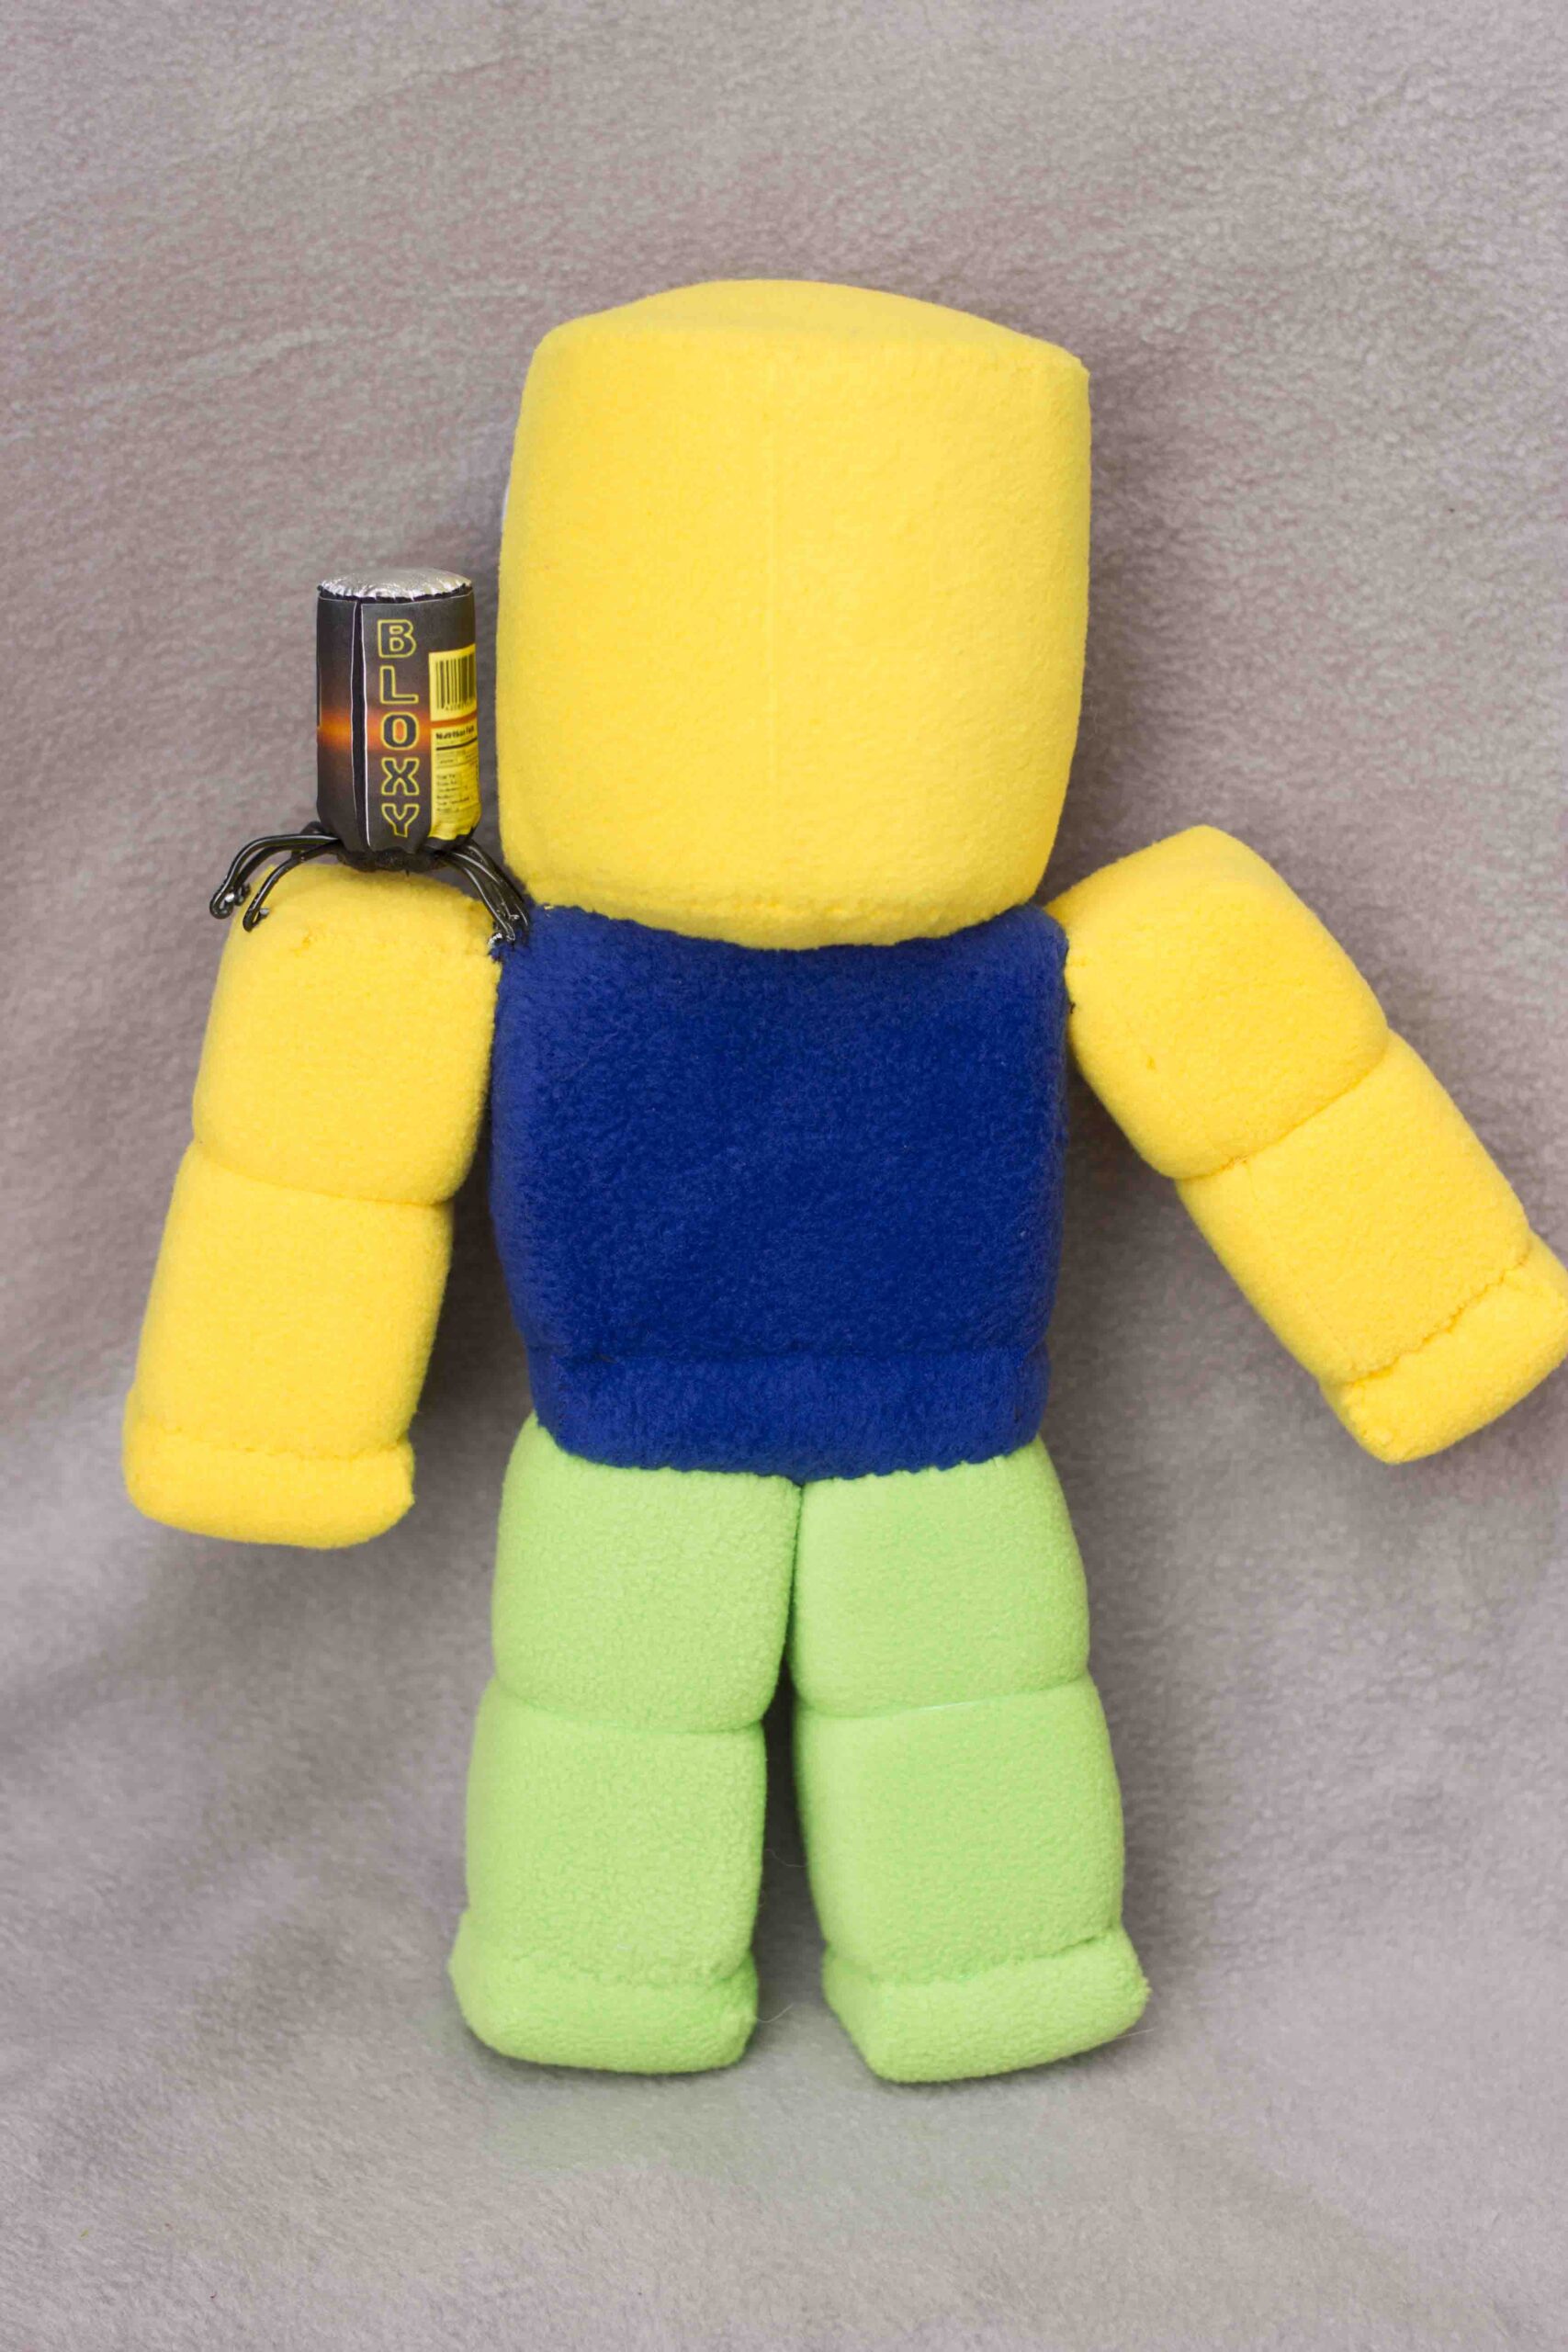 Noob Roblox Plush Gamer Gift Plushie Toy 